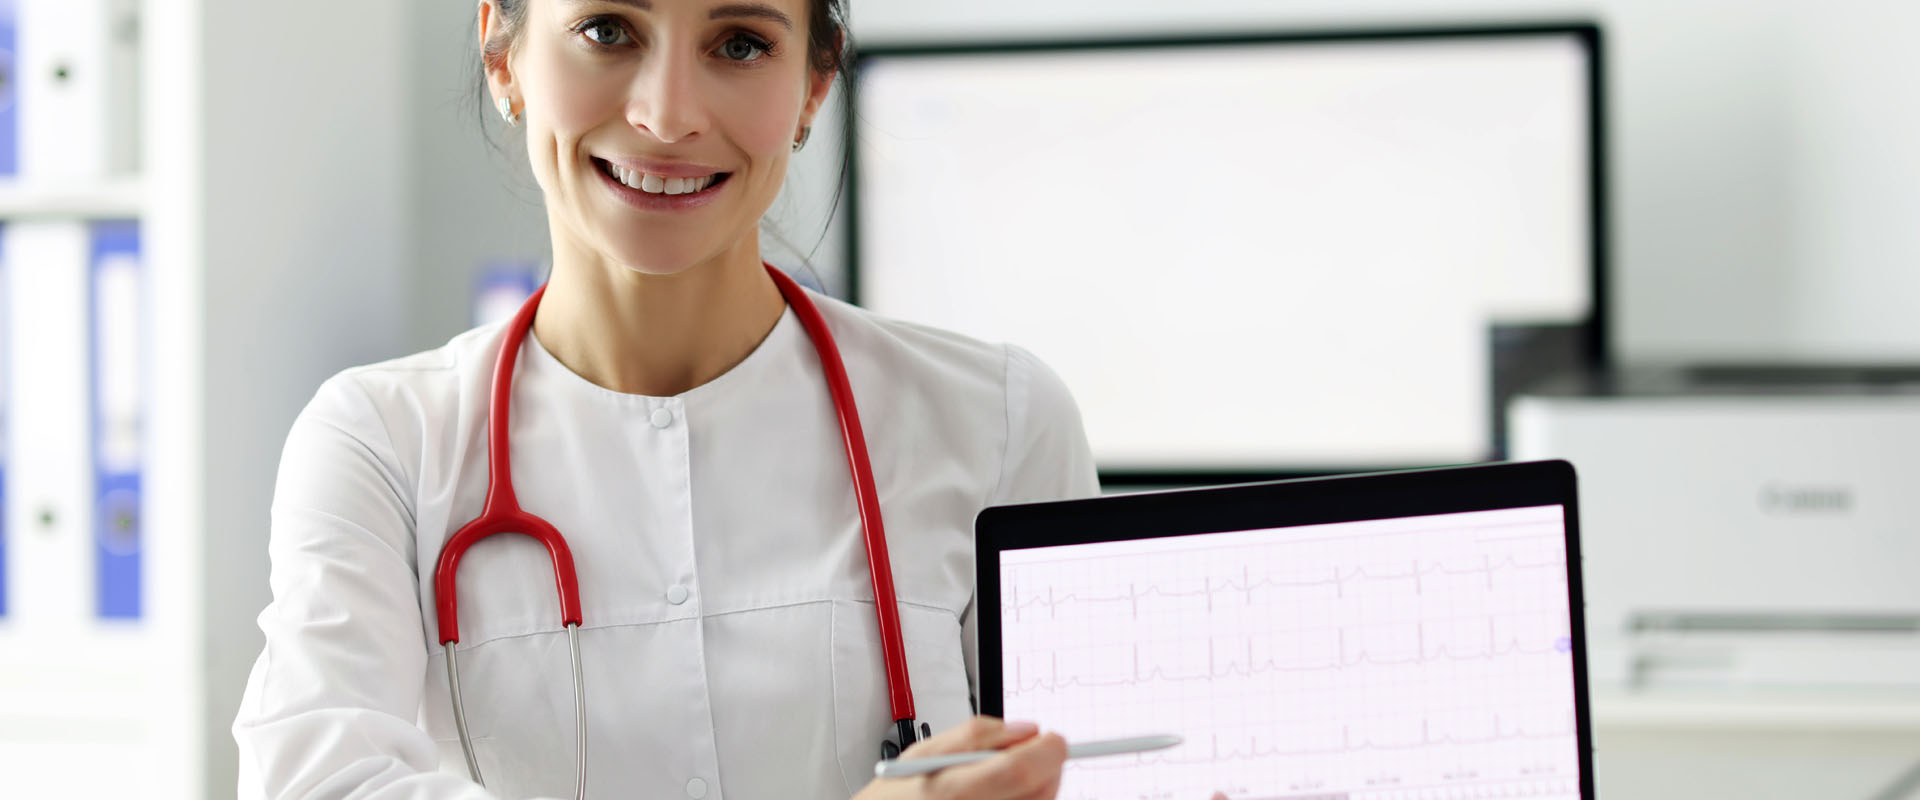 Doctor cardiologist showing electrocardiogram on digital tablet